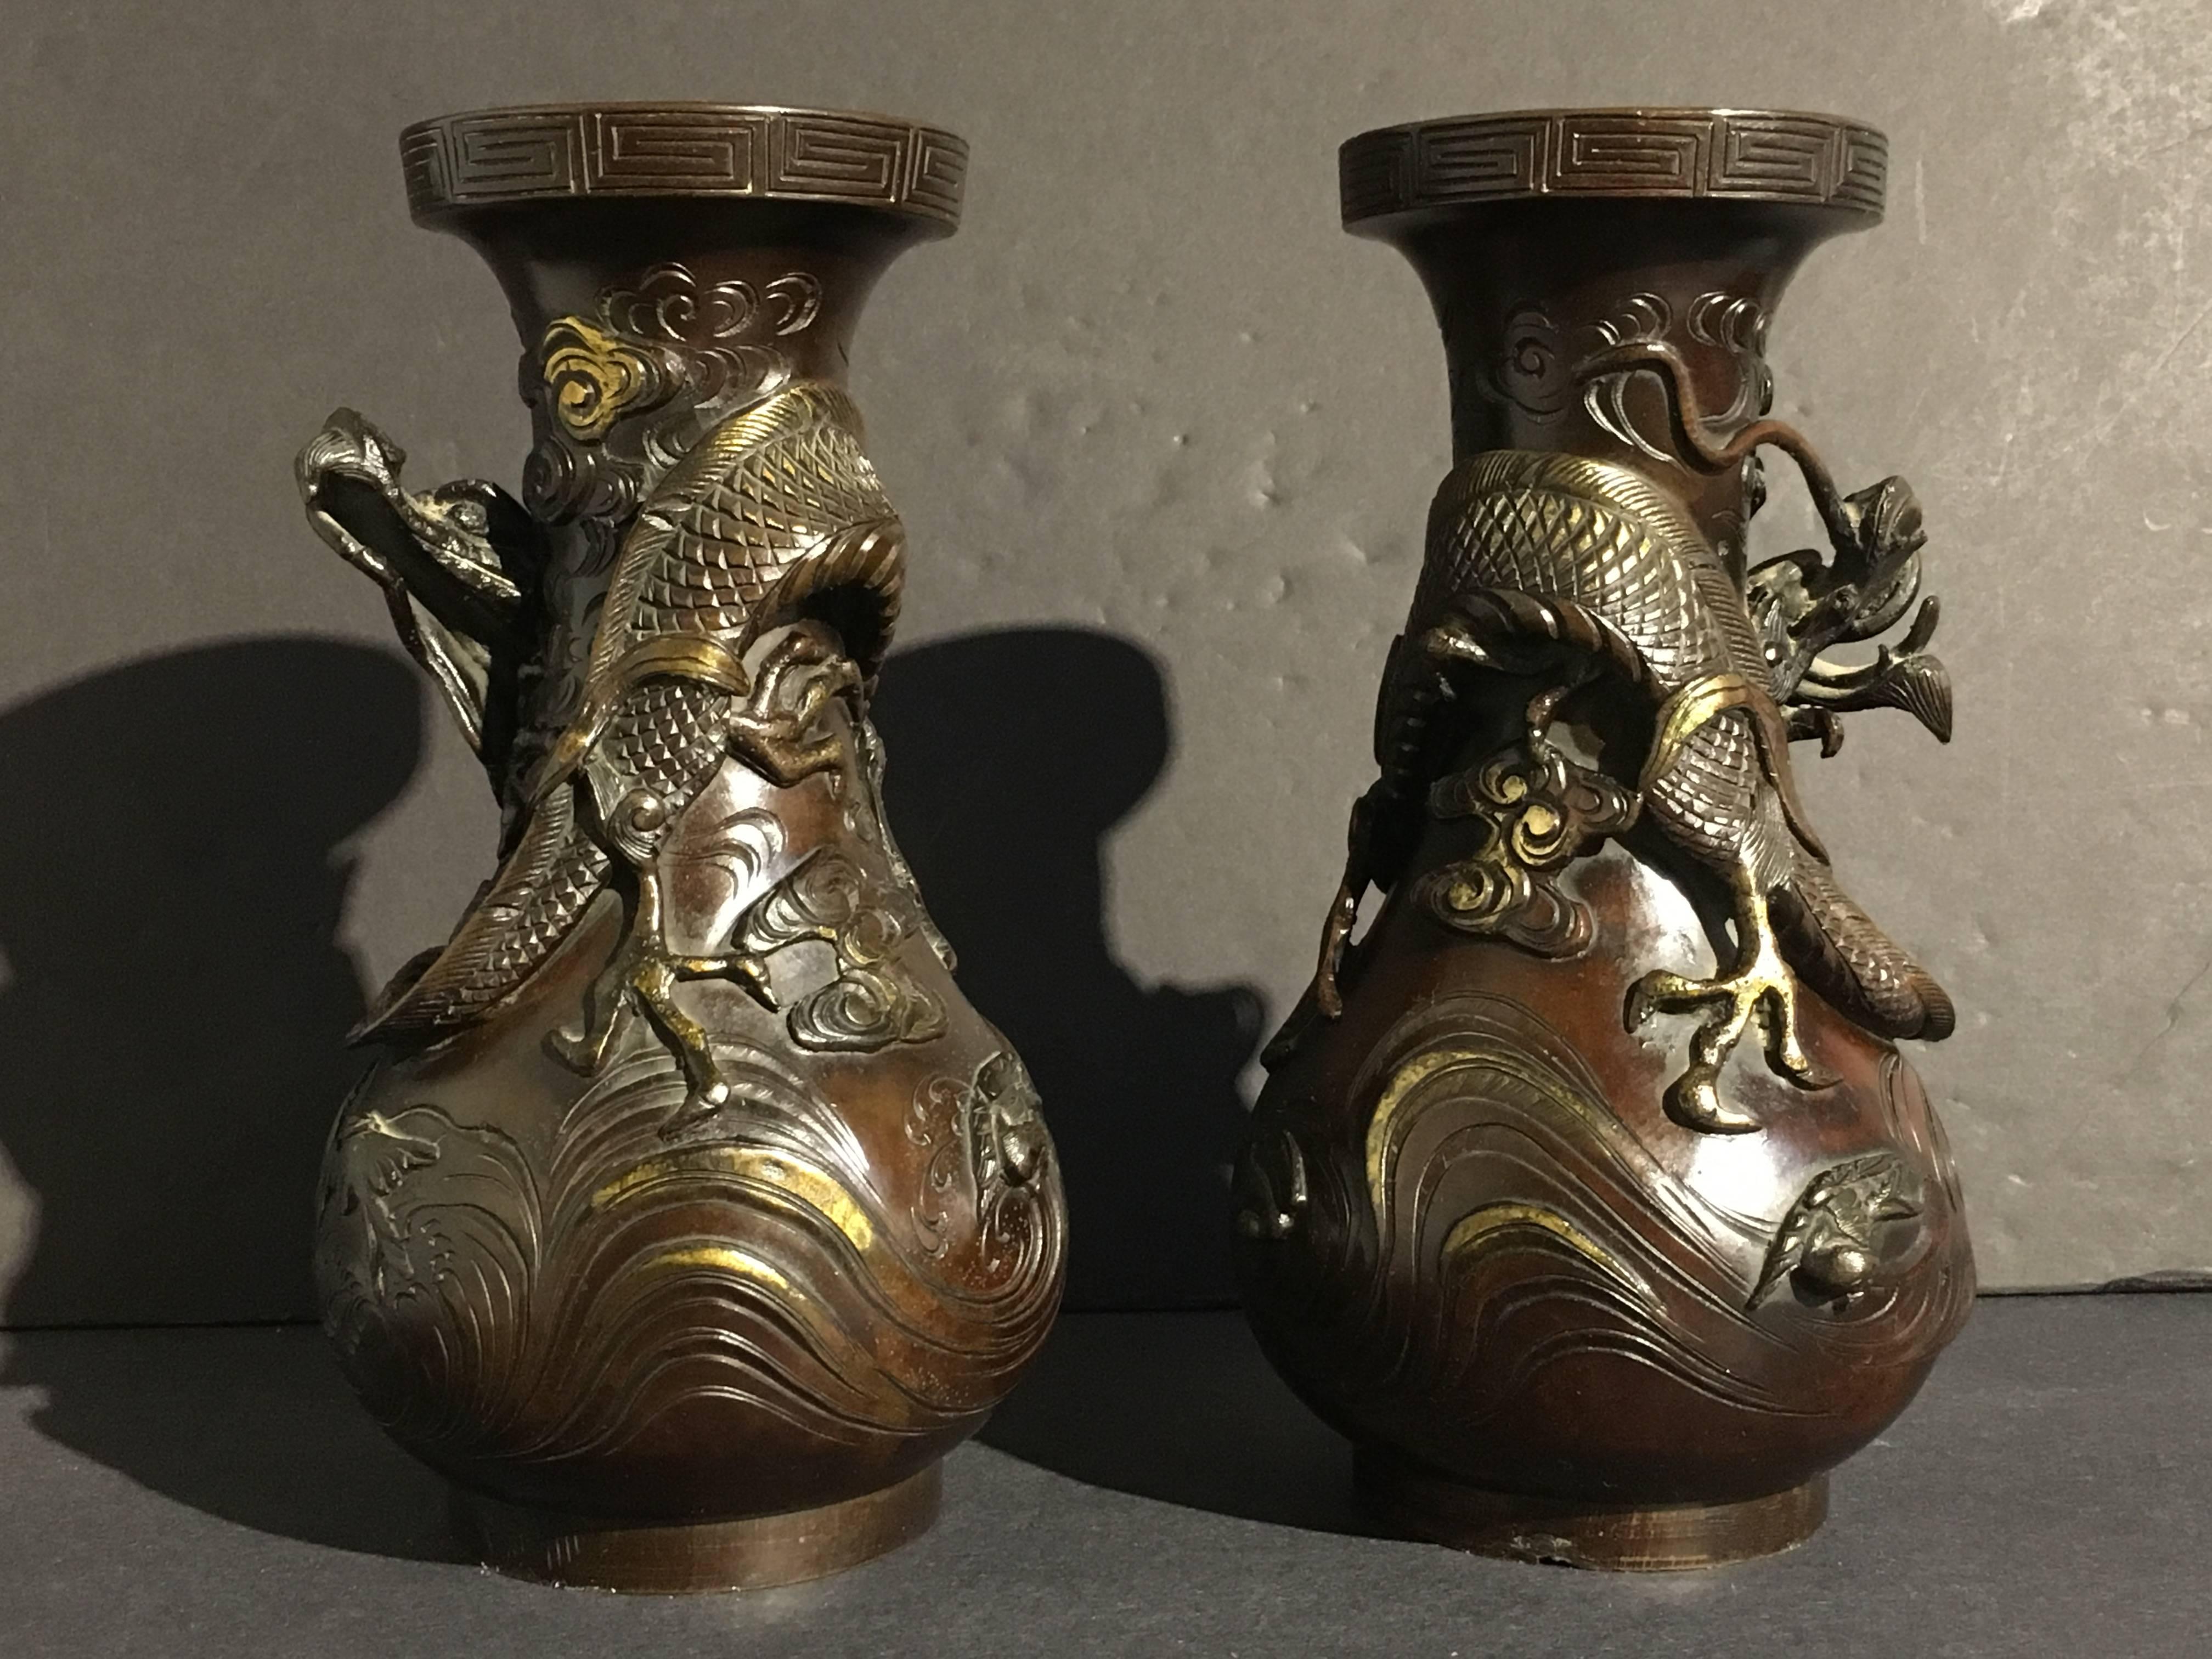 Ein Paar gut gegossene und dramatische japanische Drachenvasen aus vergoldeter Bronze, Edo-Periode, frühes 19. Jahrhundert. Die schweren, birnenförmigen Bronzevasen zeigen jeweils einen einzelnen, sich windenden Drachen in Hochrelief, der in den